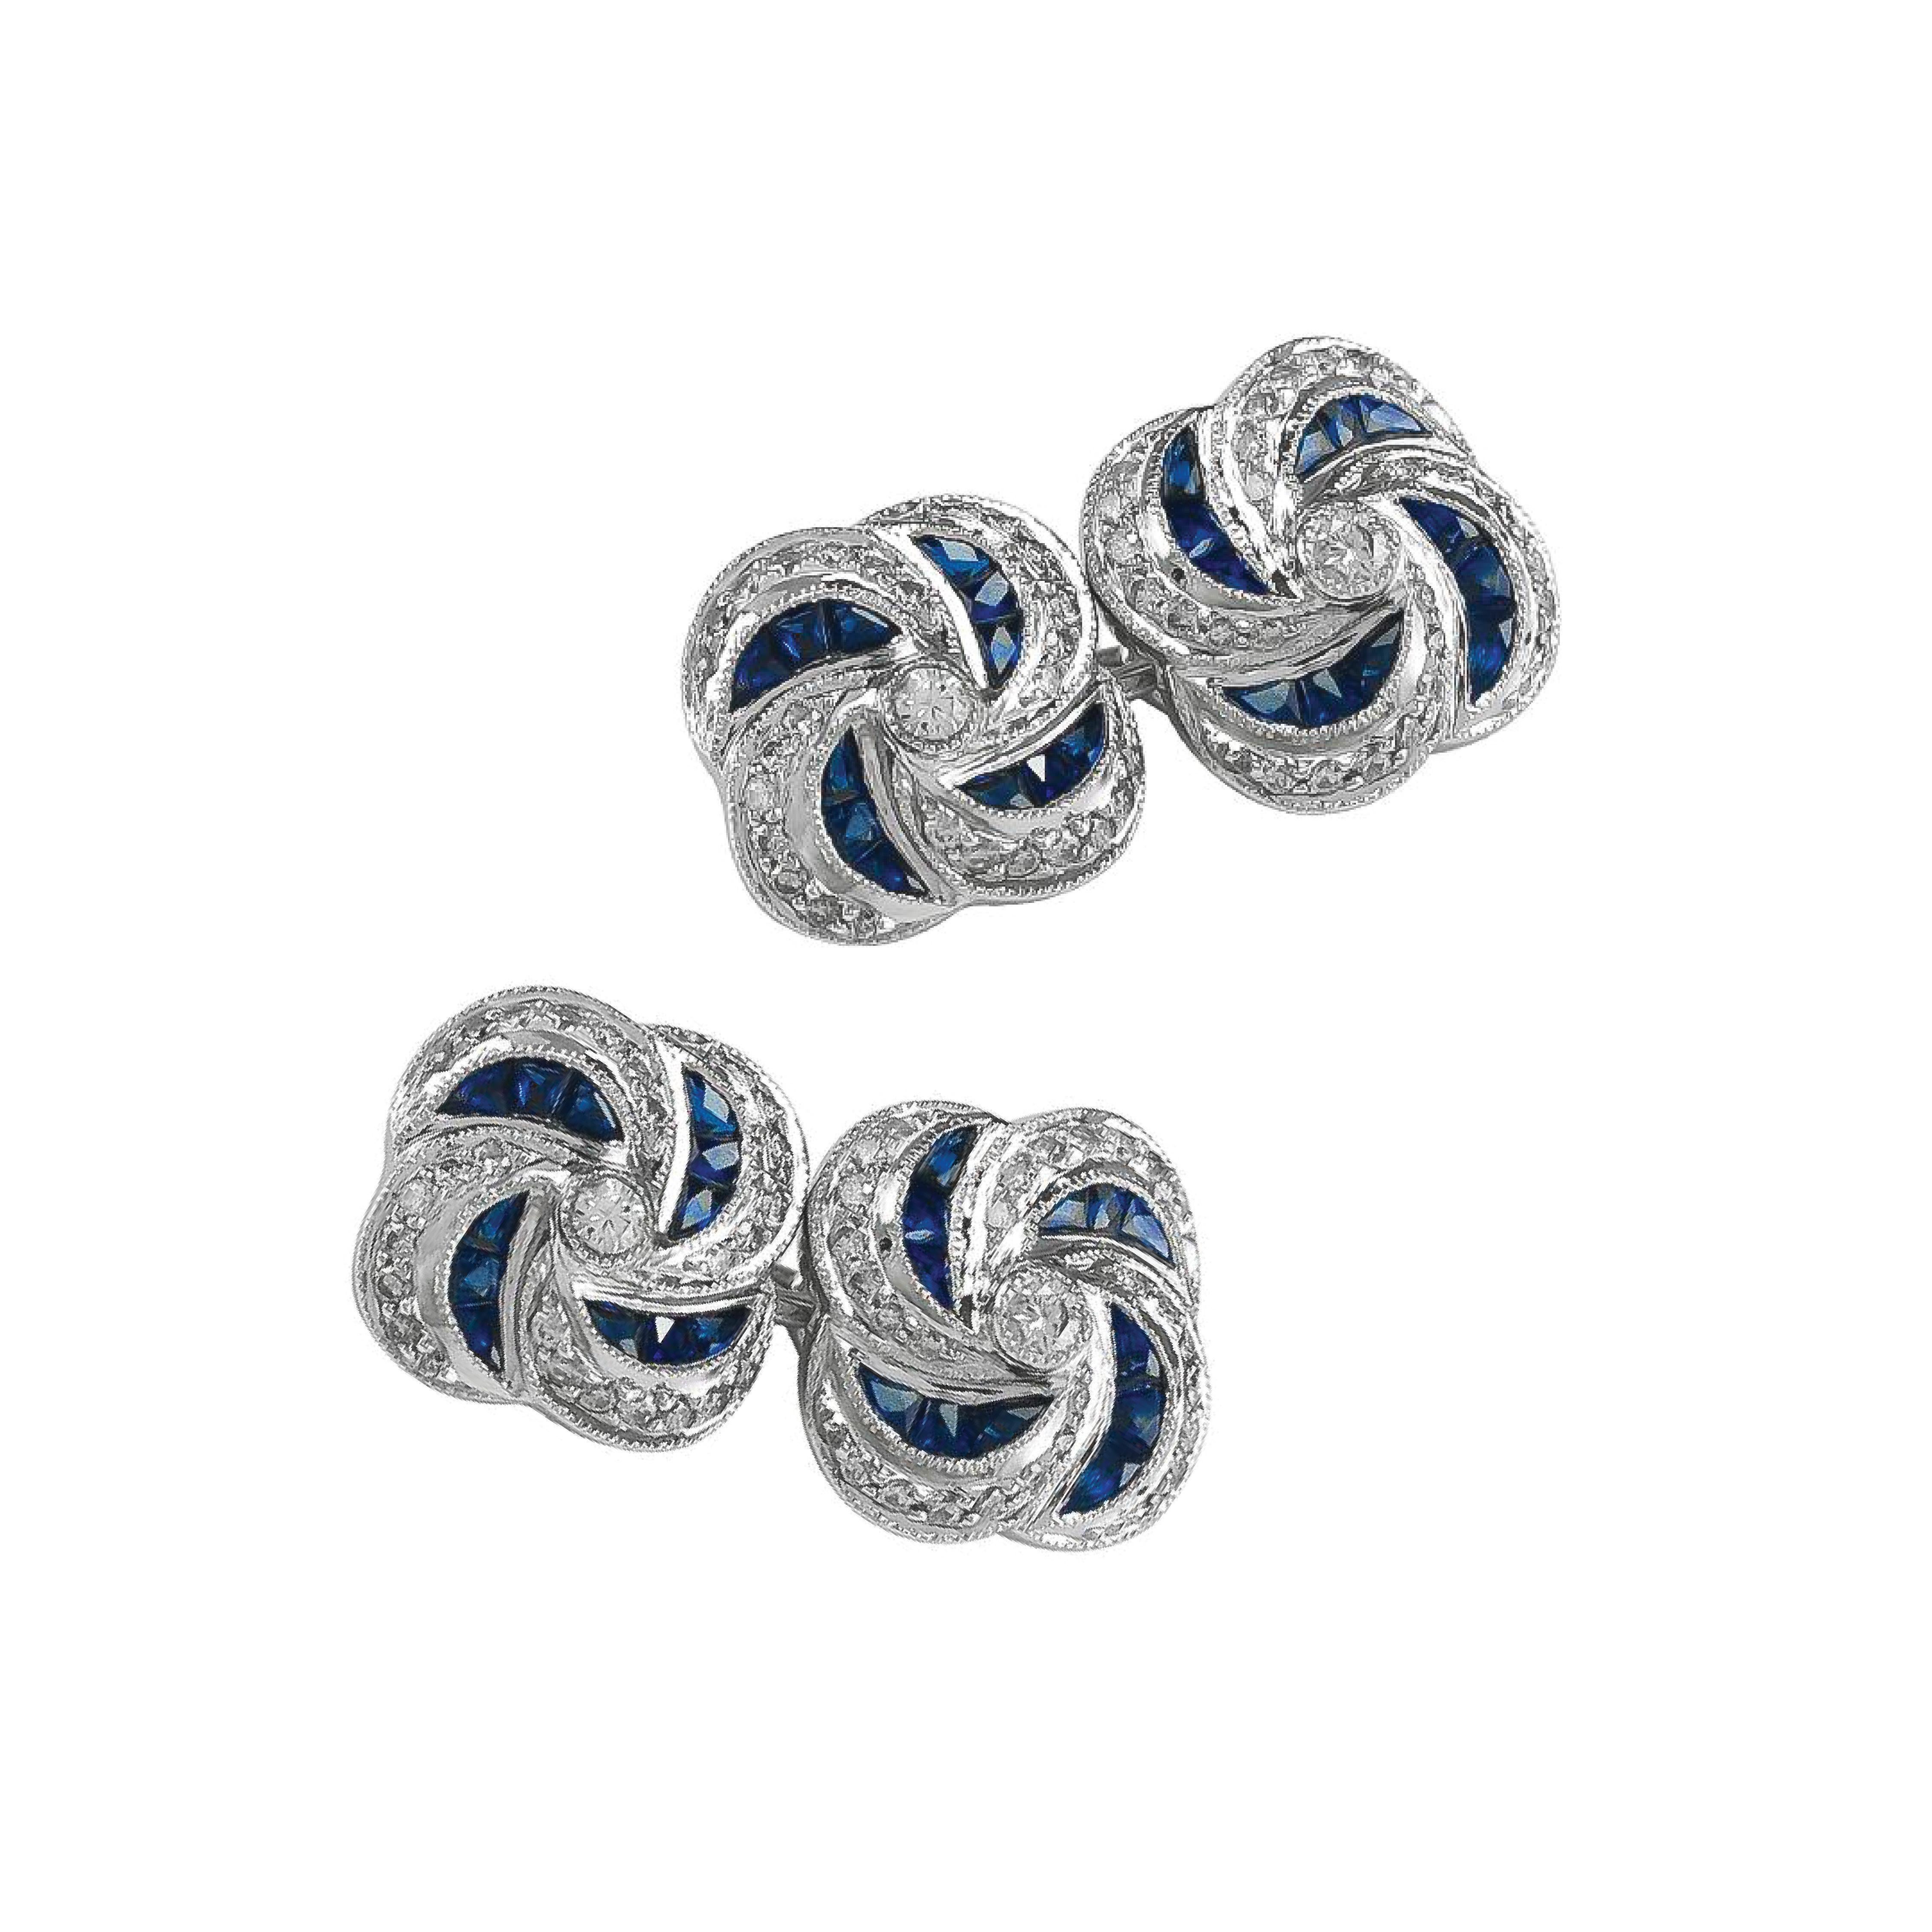 Manschettenknöpfe aus Platin mit blauen Saphiren von 2,19 Karat und Diamanten von 1,02 Karat.

Sophia D von Joseph Dardashti LTD ist seit 35 Jahren weltweit bekannt und lässt sich vom klassischen Art-Déco-Design inspirieren, das mit modernen